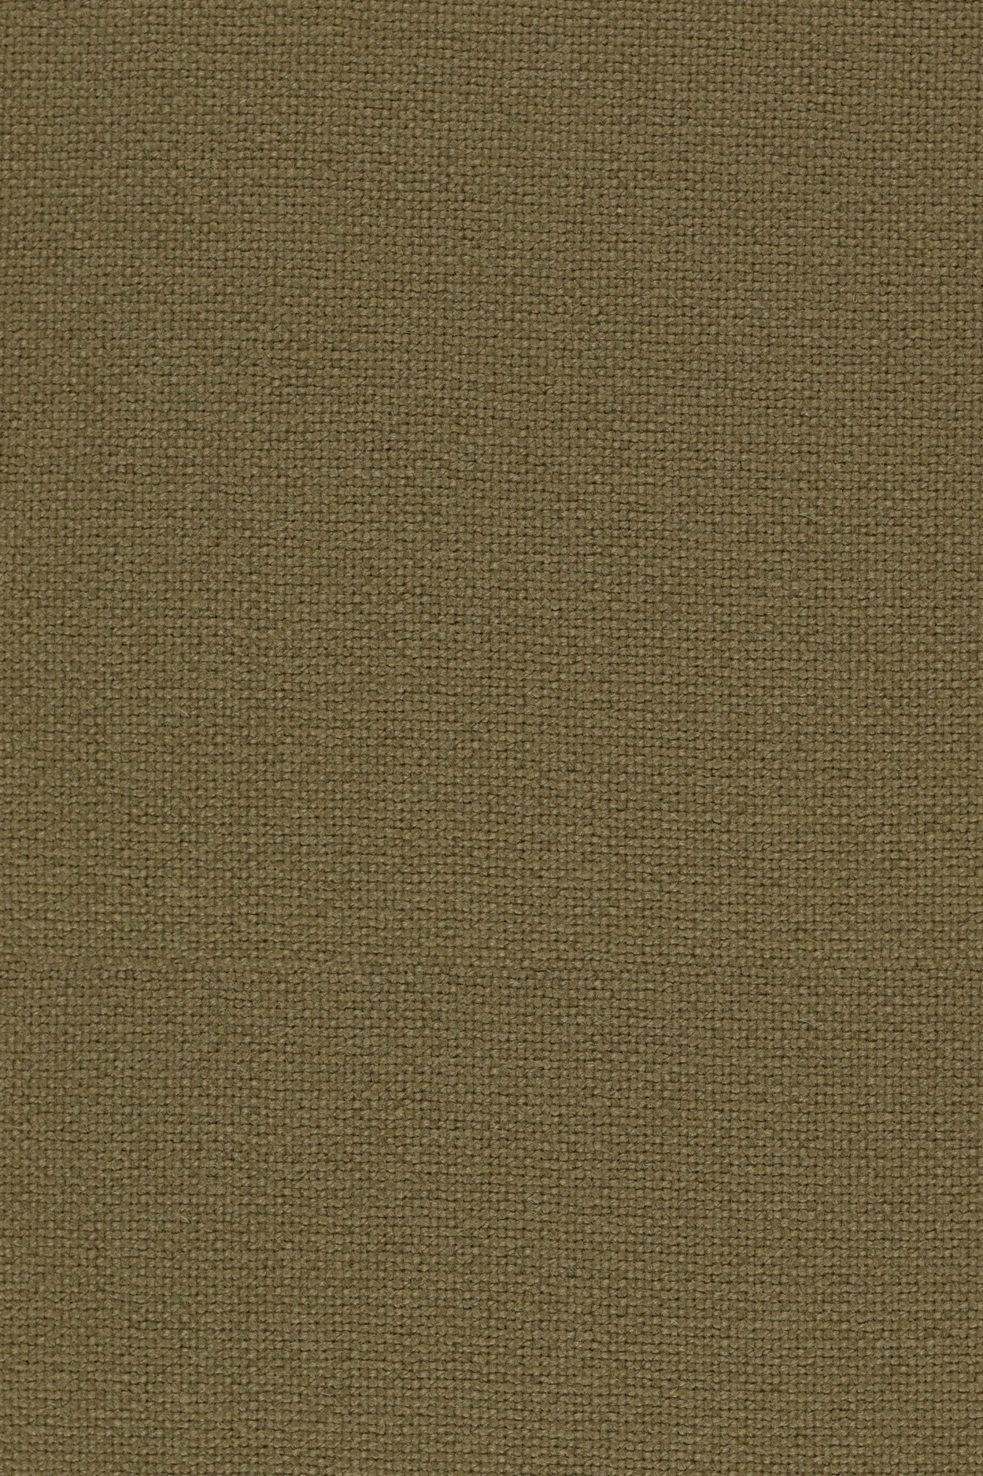 Fabric sample Hallingdal 65 224 brown